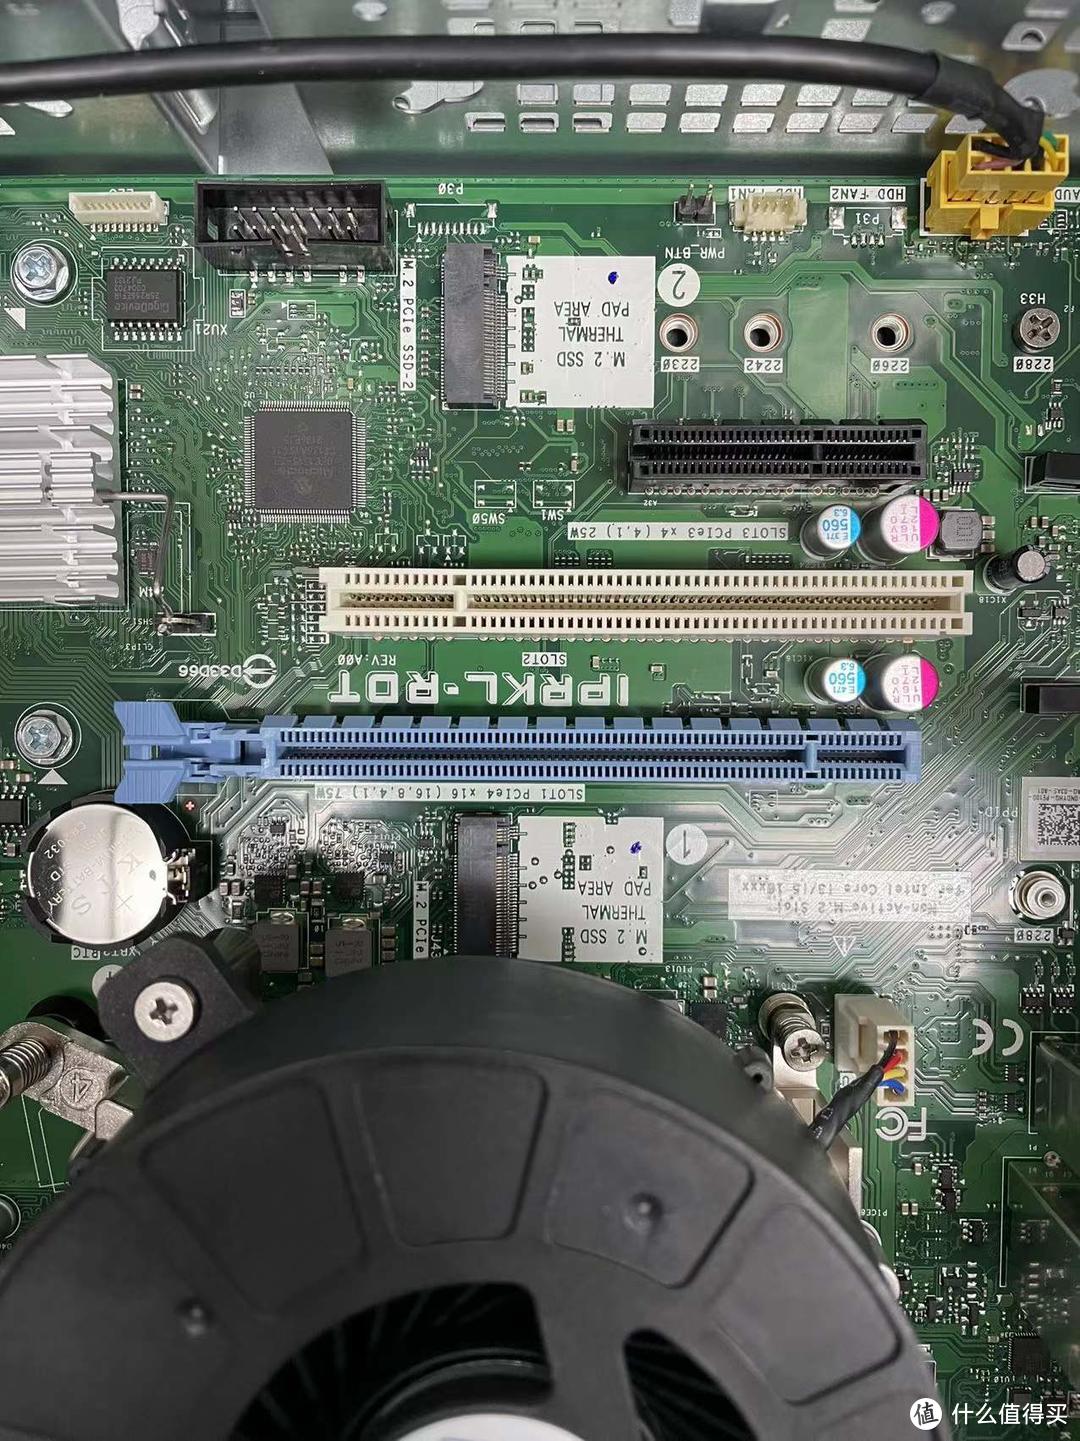 一共三个PCI-E，一个全高PCI-E 3.0×16插槽，一个全高PCI-32（传统）插槽，一个全高PCI-E 3.0×4插槽